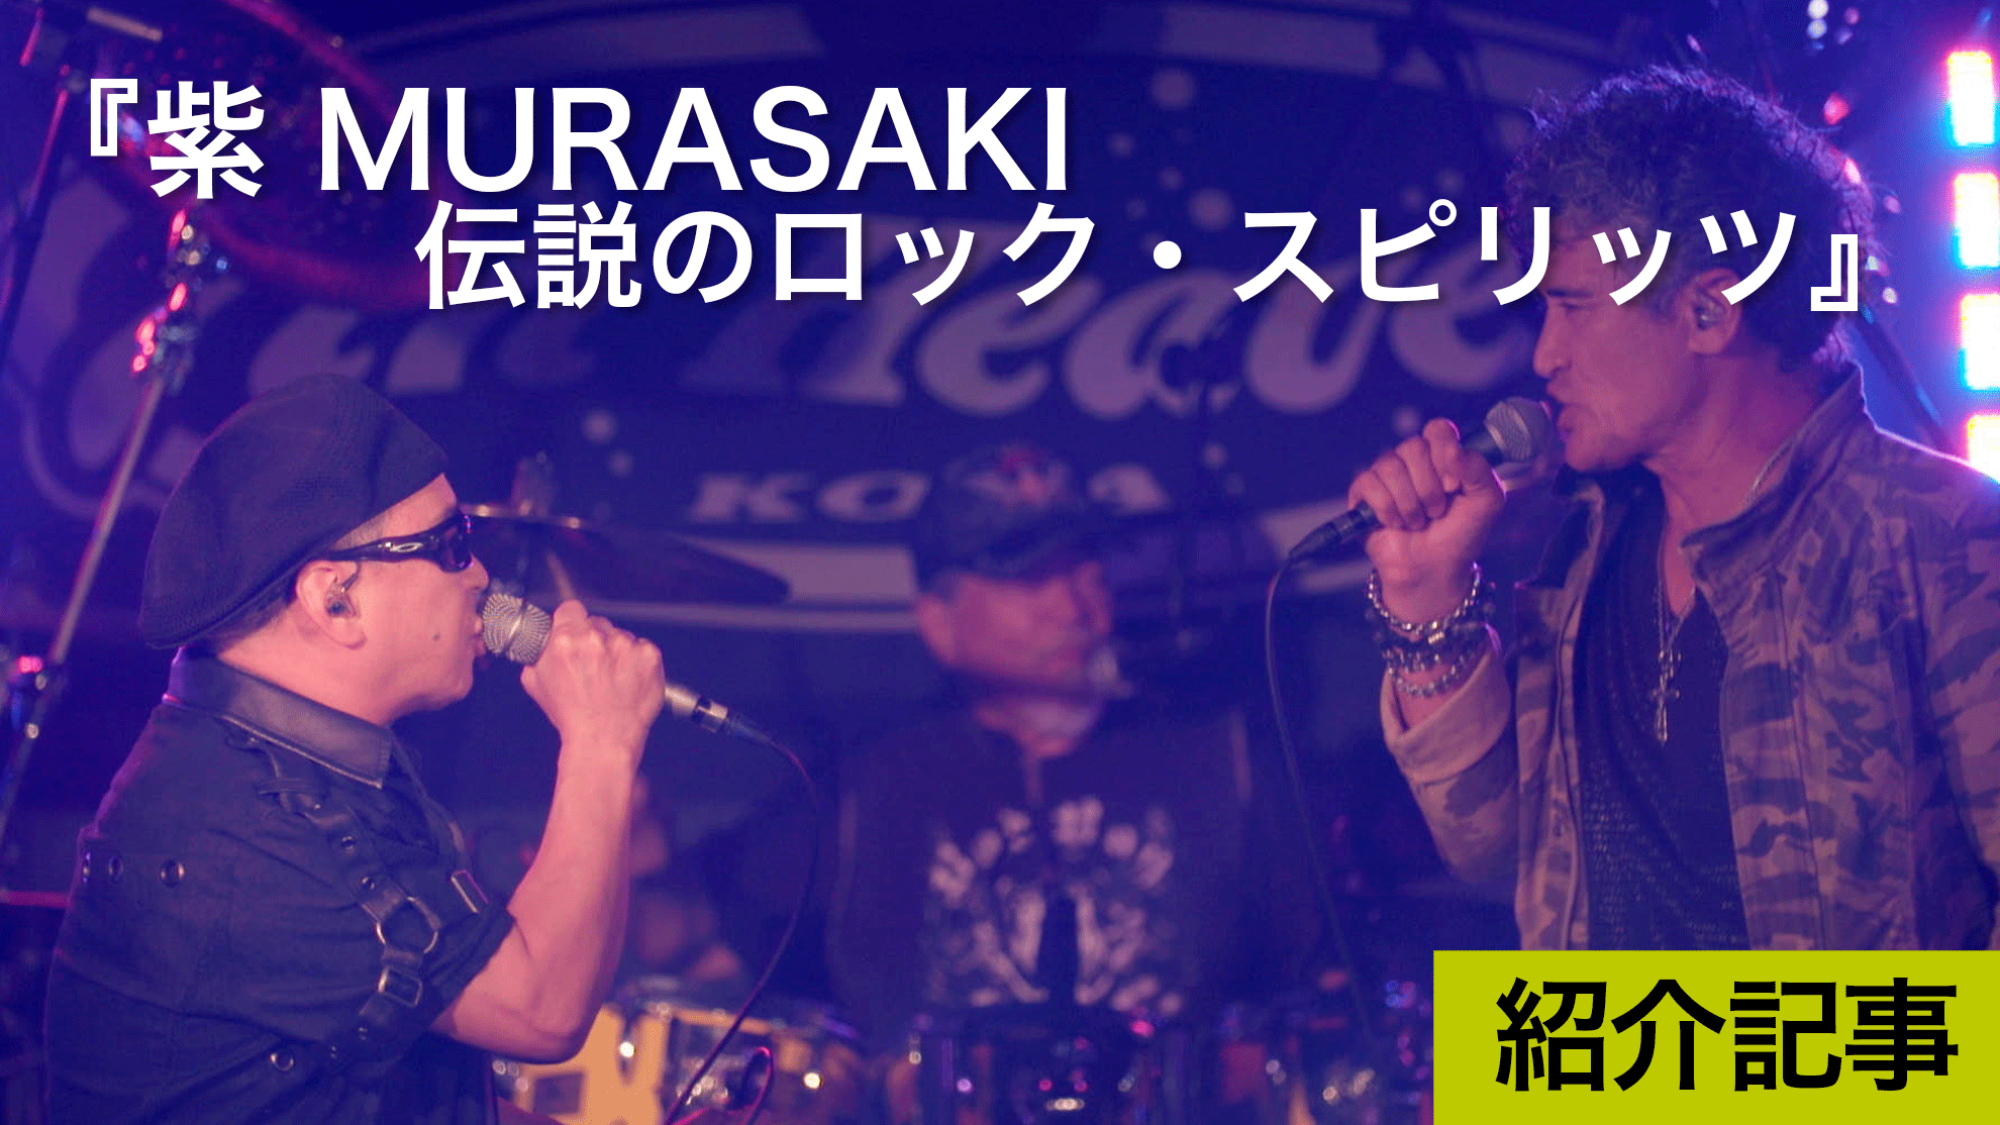 『紫 MURASAKI 伝説のロック・スピリッツ』70年結成、現在も活躍するバンドをドキュメント